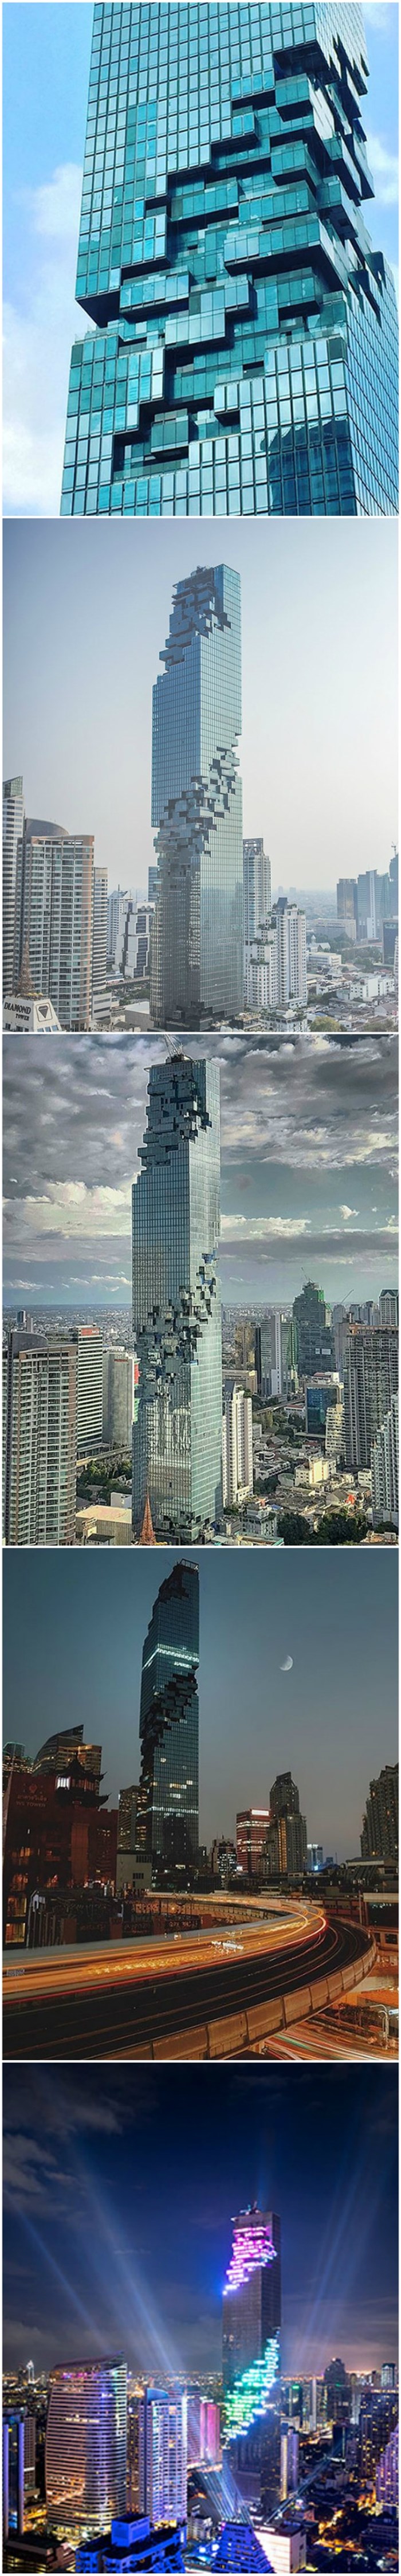 Nova najviša zgrada u Tajlandu izgleda kao da joj nešto fali...